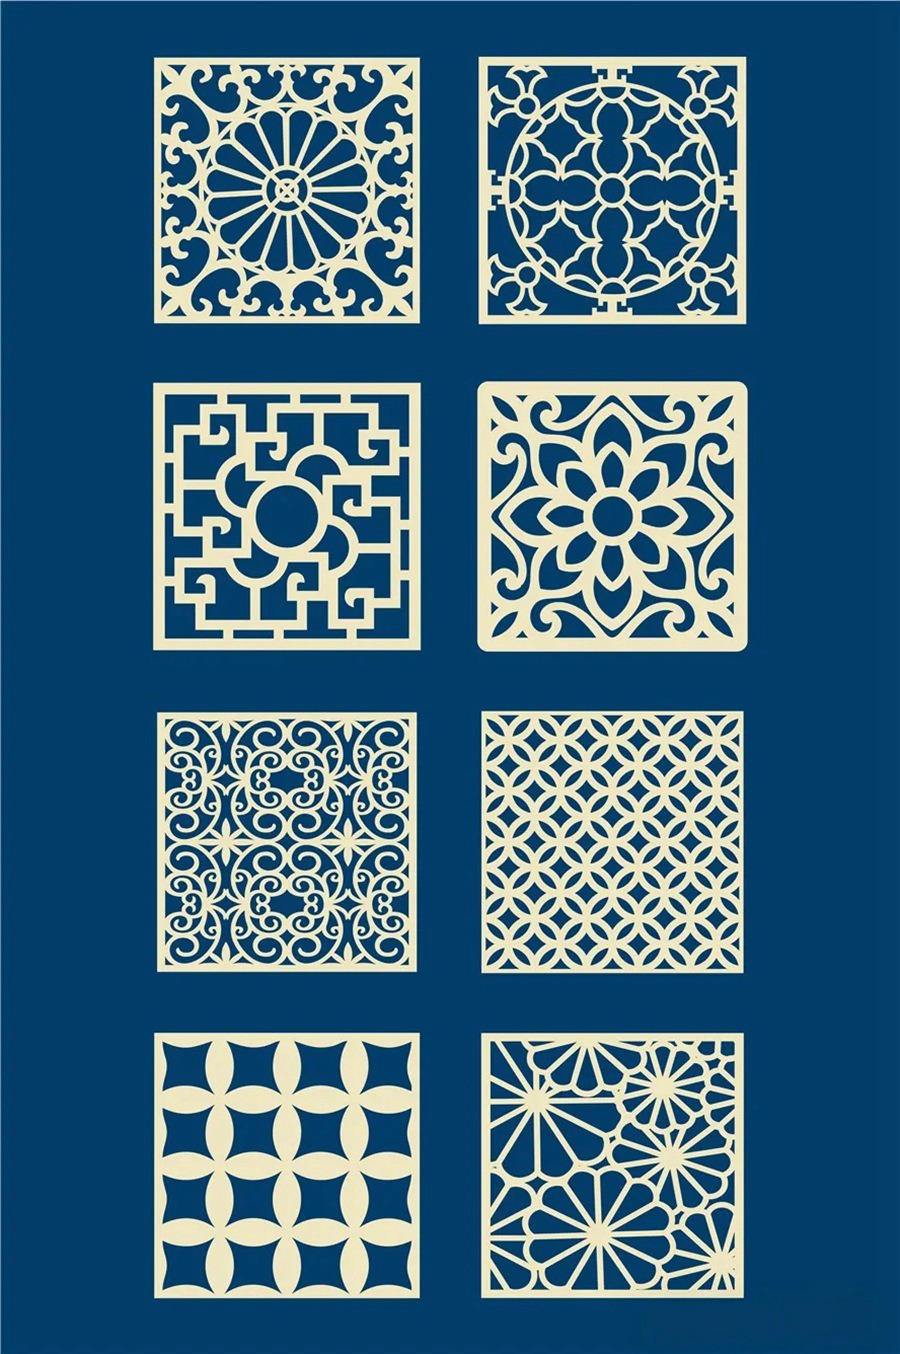 中国风传统古典青花瓷图案花纹图形纹样AI矢量模板花纹设计素材 图片素材 第4张